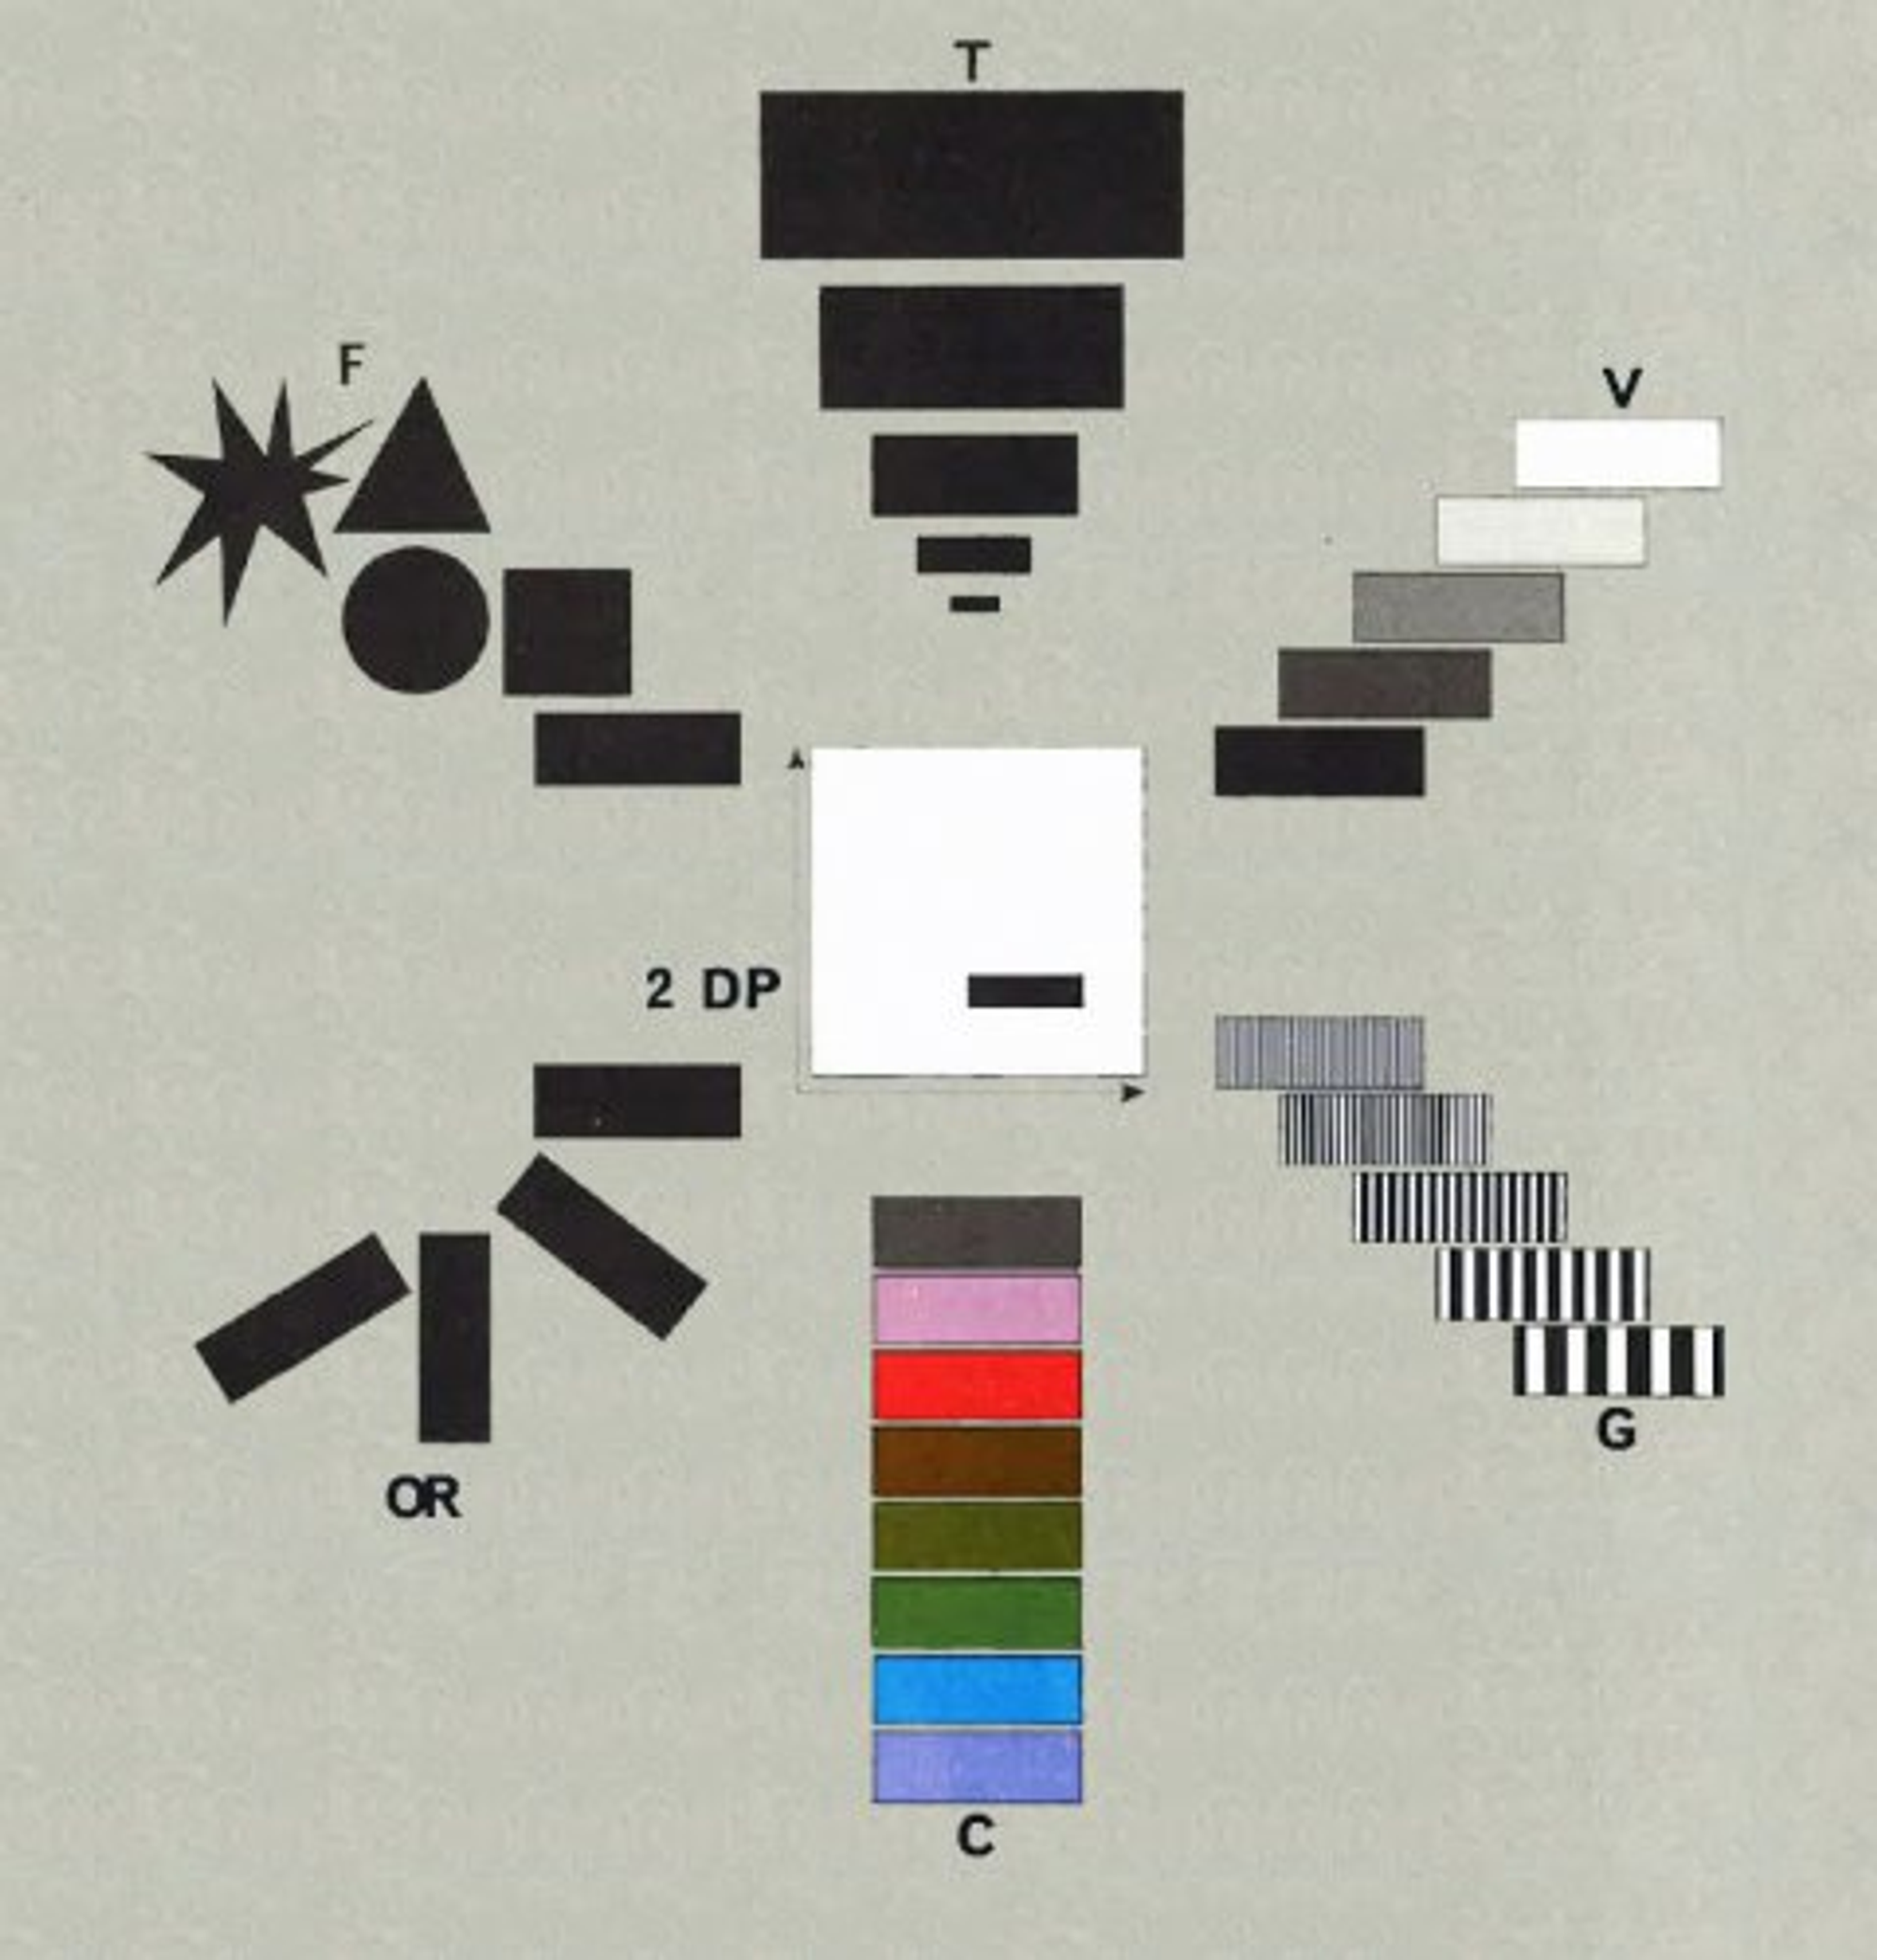 Les variables visuelles : taille, valeur, grain, couleur, orientation, forme.
Jacques Bertin, Sémiologie graphique, 1967.